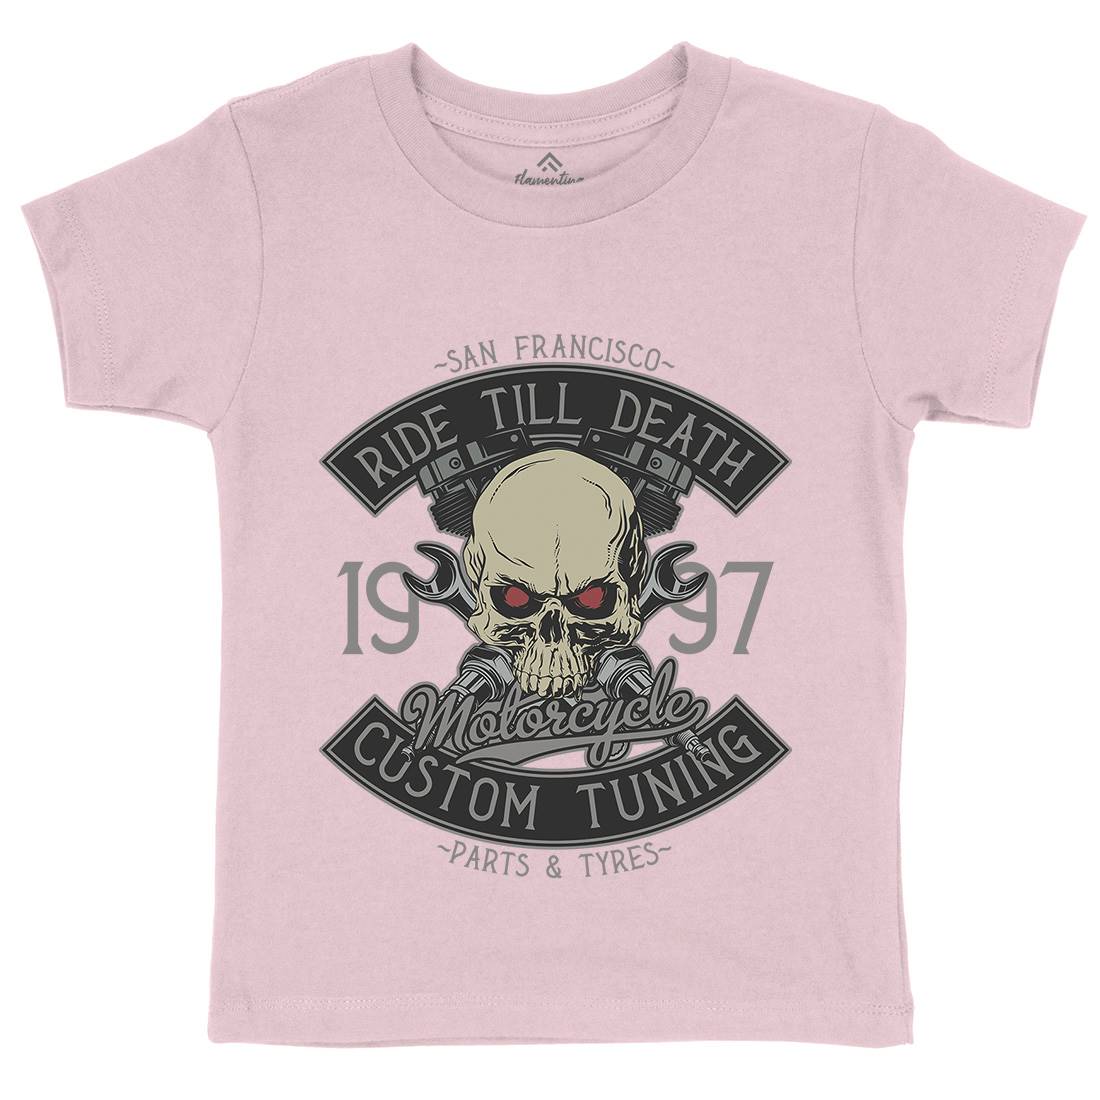 Ride Till Death Kids Crew Neck T-Shirt Motorcycles D963